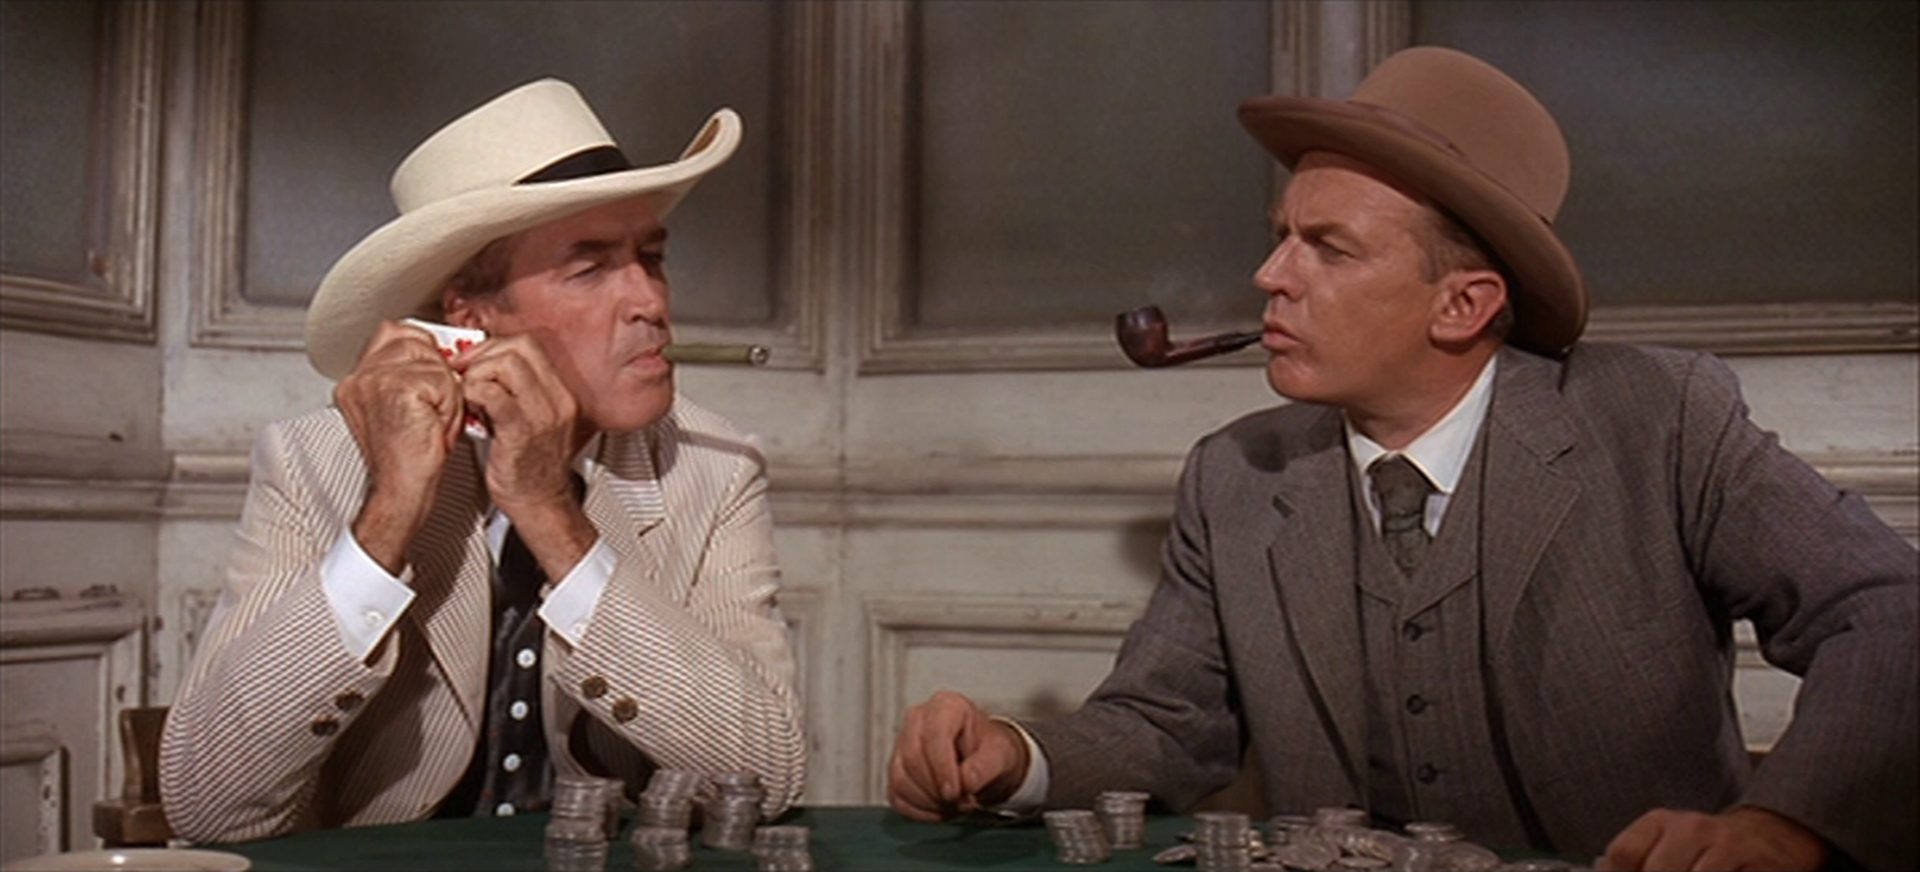 Nahaufnahme von Wyatt Earp und Doc Holliday am Pokertisch in einem Saloon; Earp raucht eine Zigarre und hält sich mit konzentriertem Gesicht einen Stapel Spielkarten an sein rechtes Ohr; Holliday raucht Pfeife und beobachtet Earp; vor ihnen sind ihre Pokereinsätze aufgetürmt.